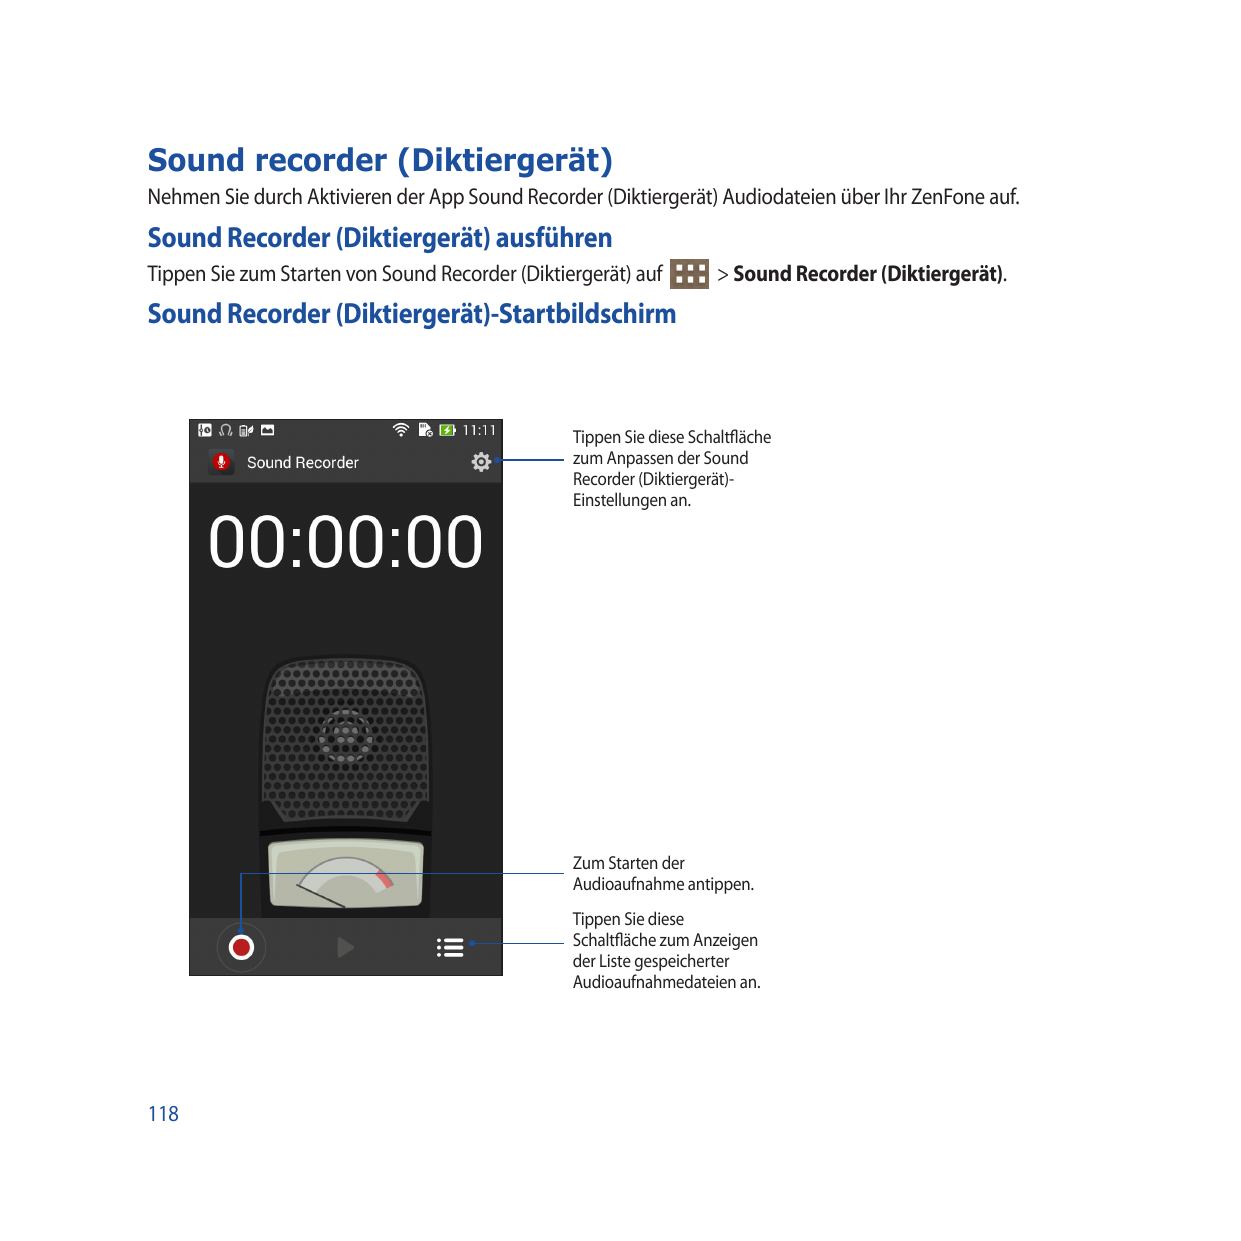 Sound recorder (Diktiergerät)Nehmen Sie durch Aktivieren der App Sound Recorder (Diktiergerät) Audiodateien über Ihr ZenFone auf